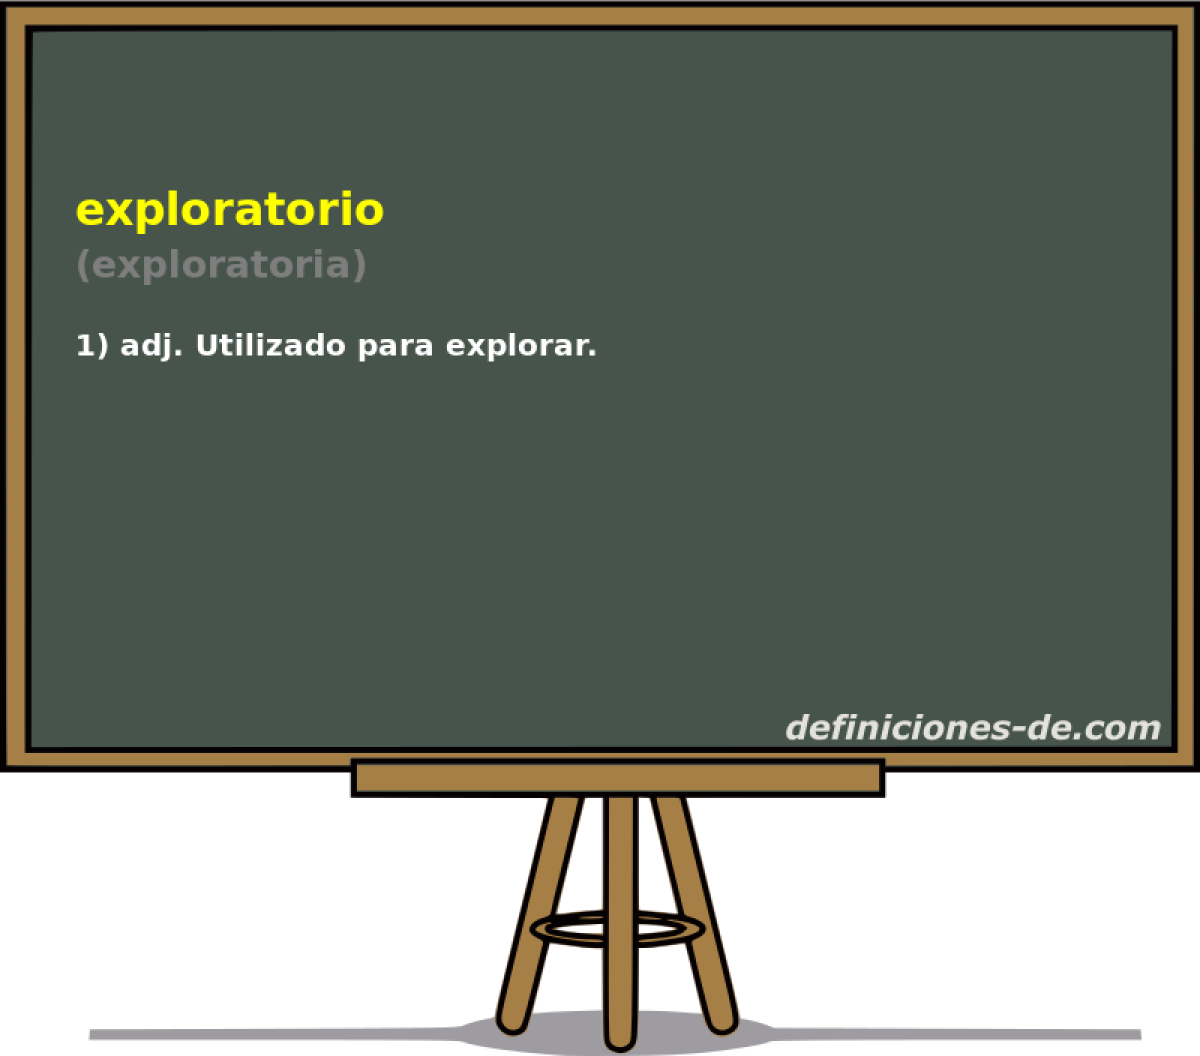 exploratorio (exploratoria)